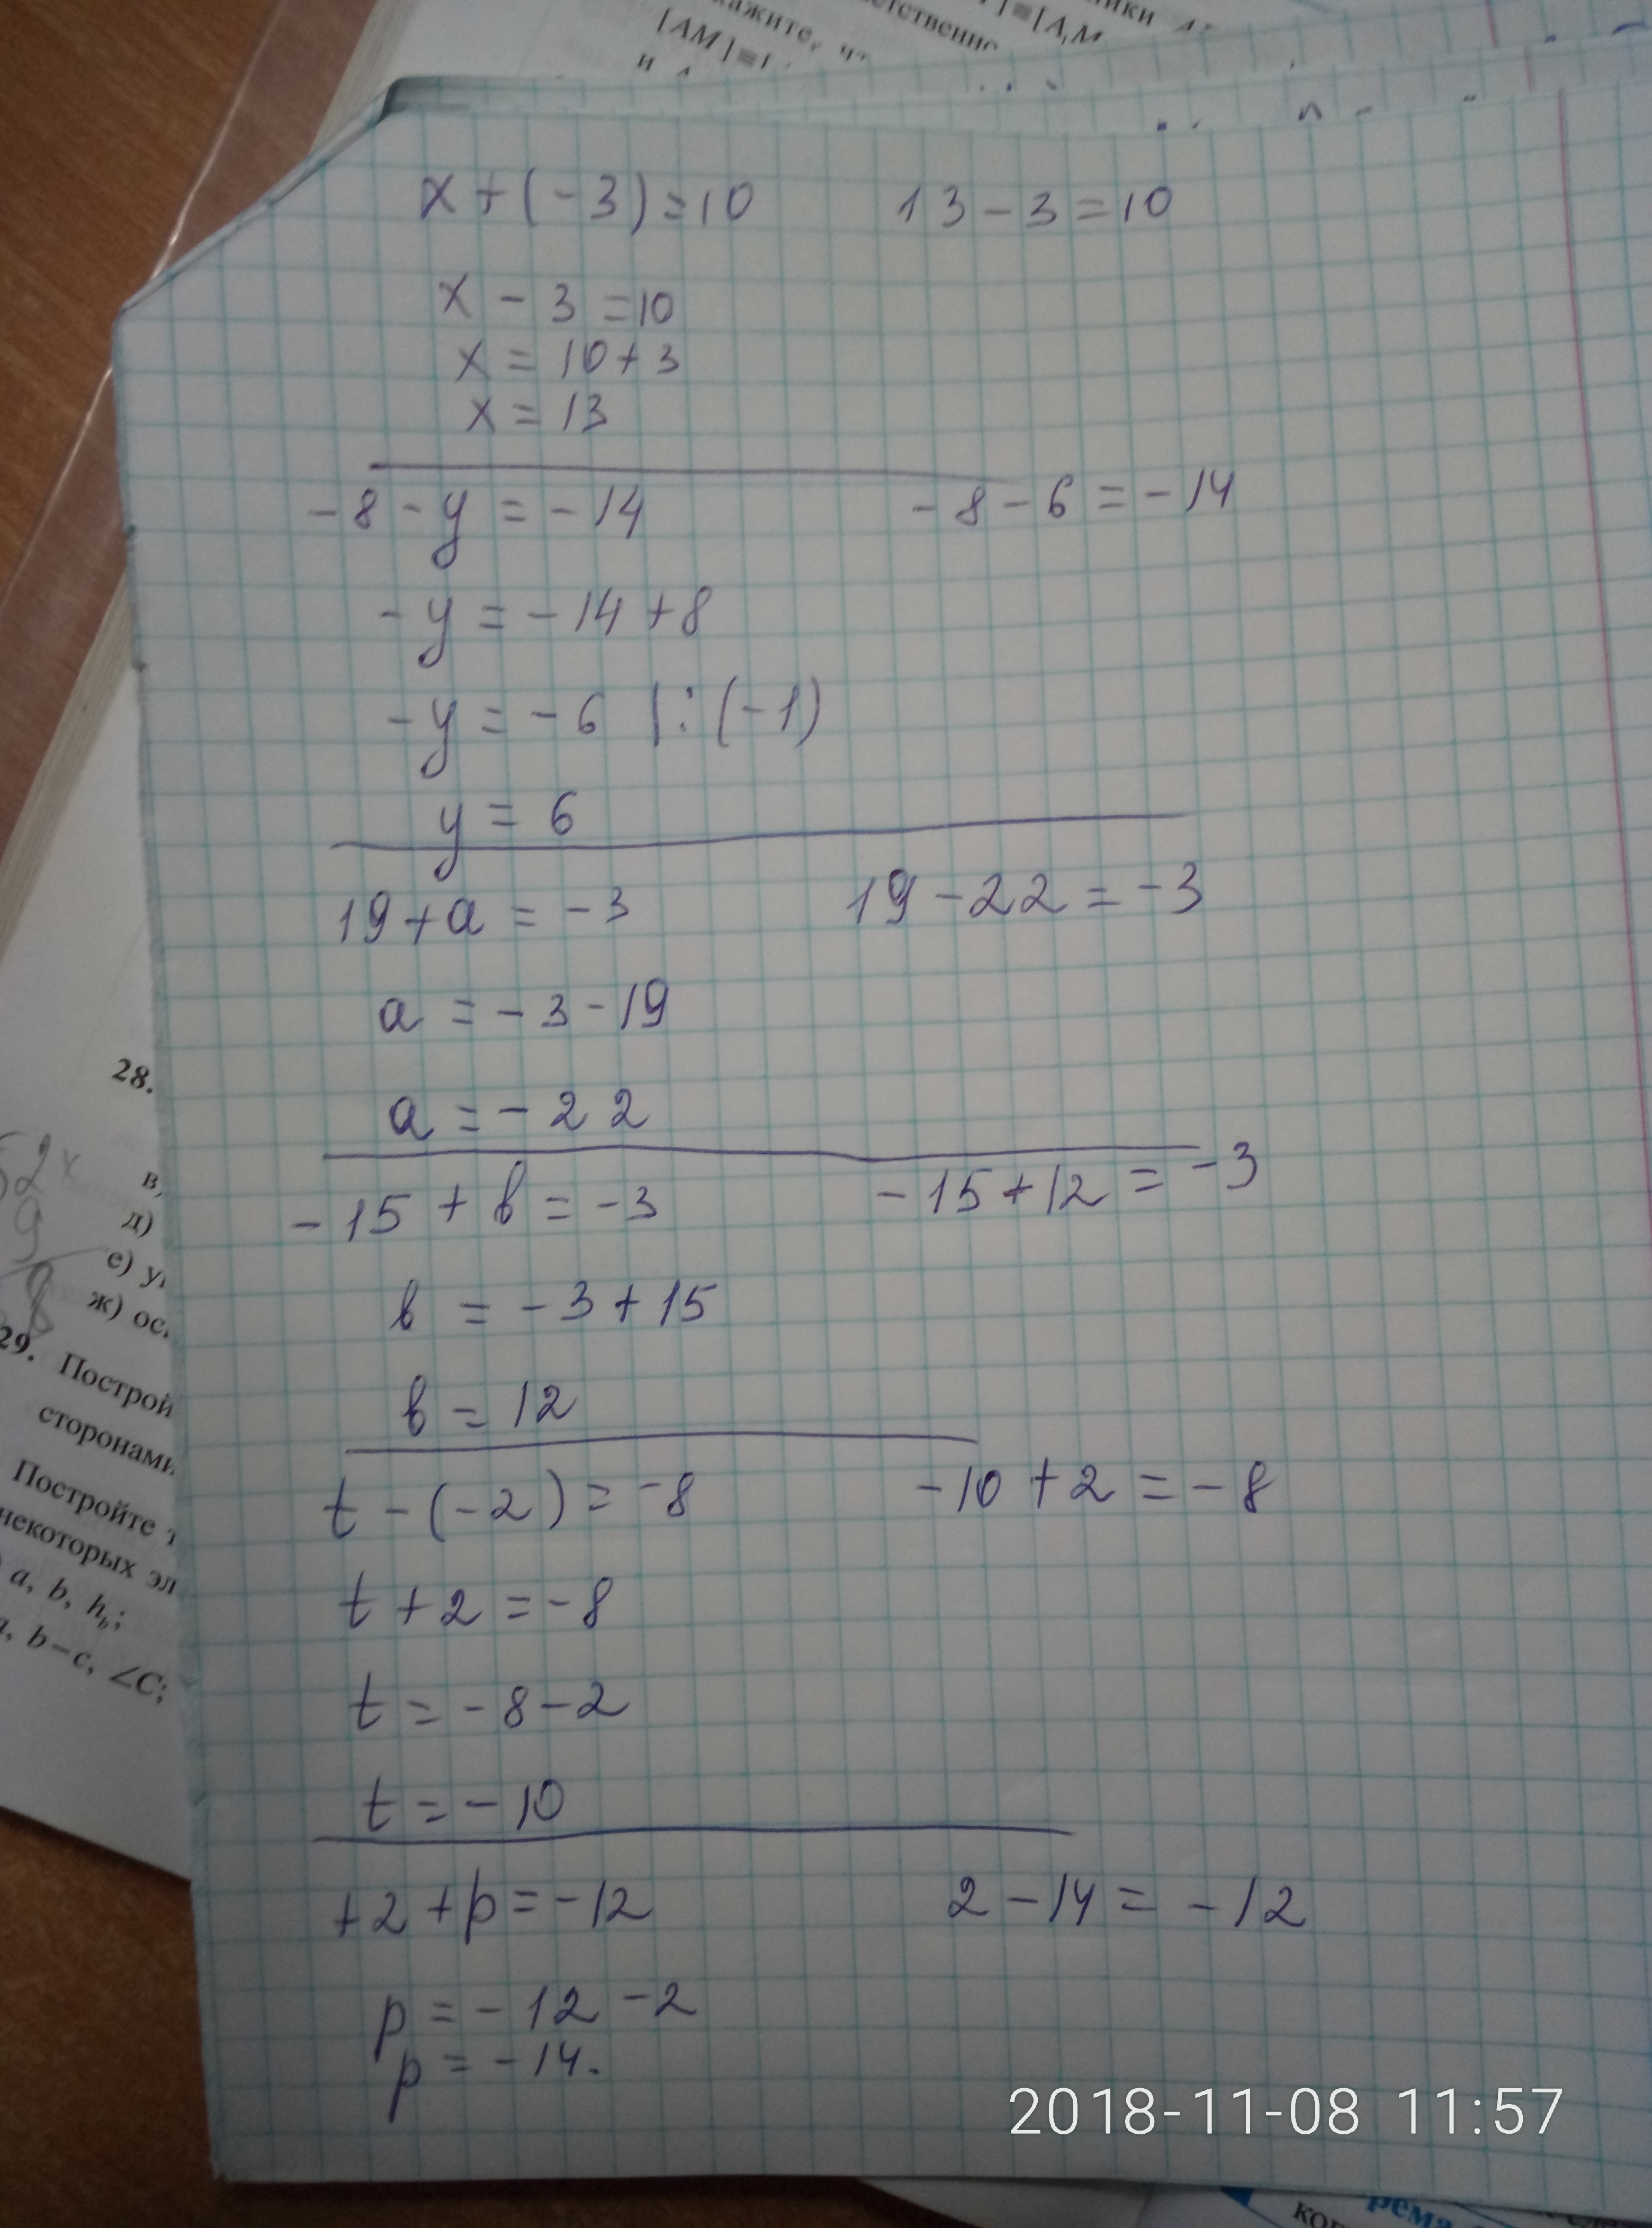 X 15 25 ответ. Ответ 8= x=2. X^3-6x^2+3x+21=0 решение. 8/X-3-10/X 2. X-3 ответ.